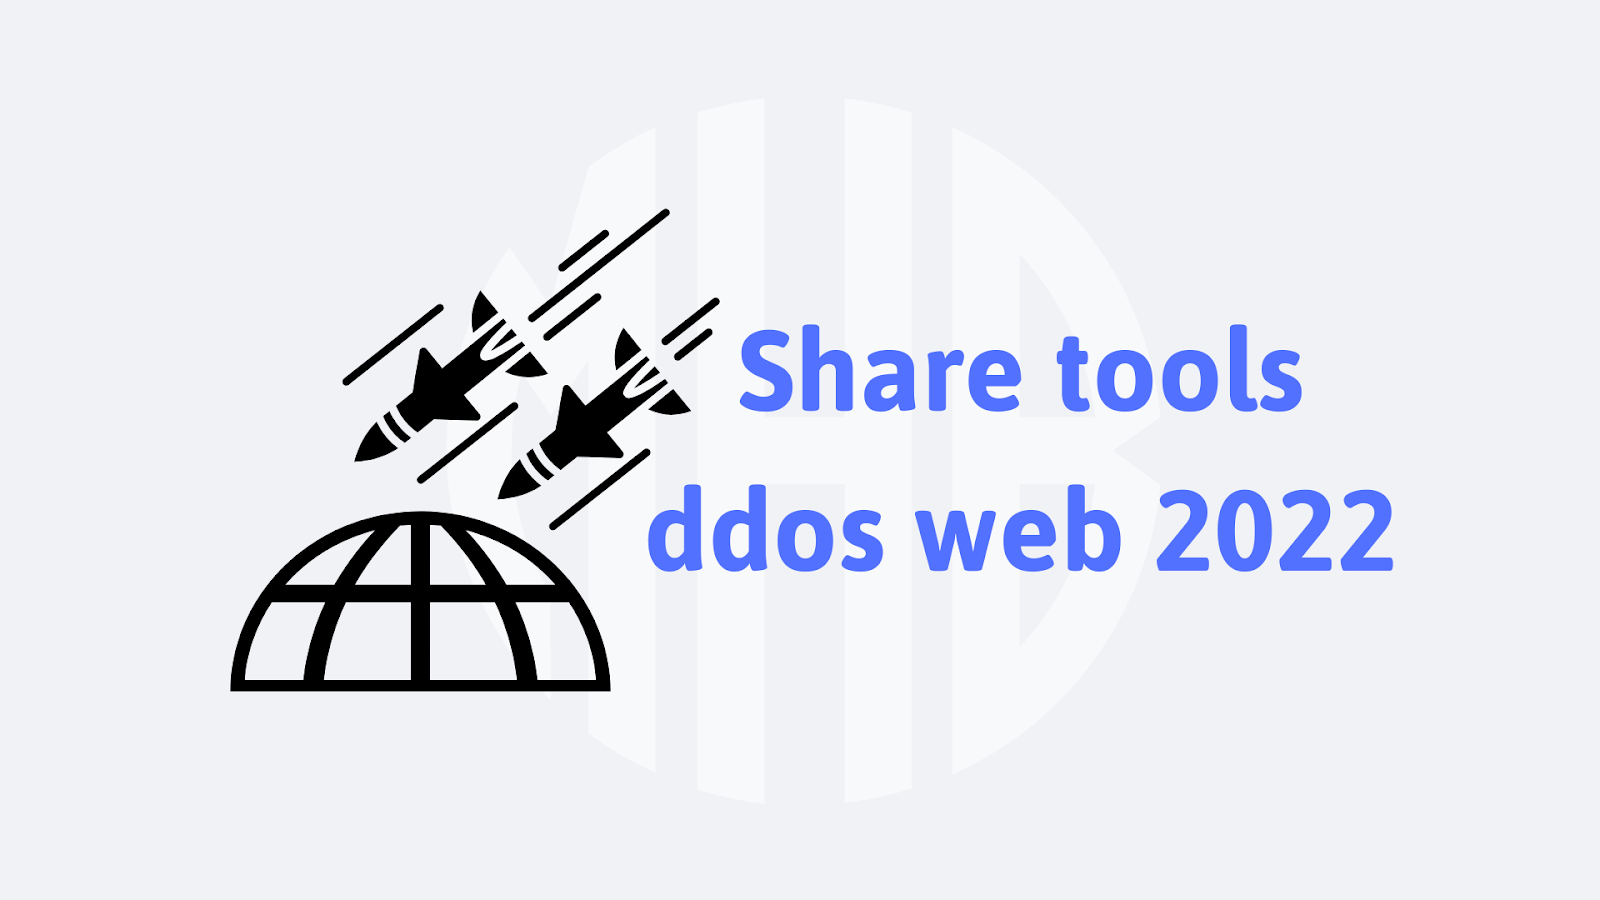 Share tools ddos web 2022.